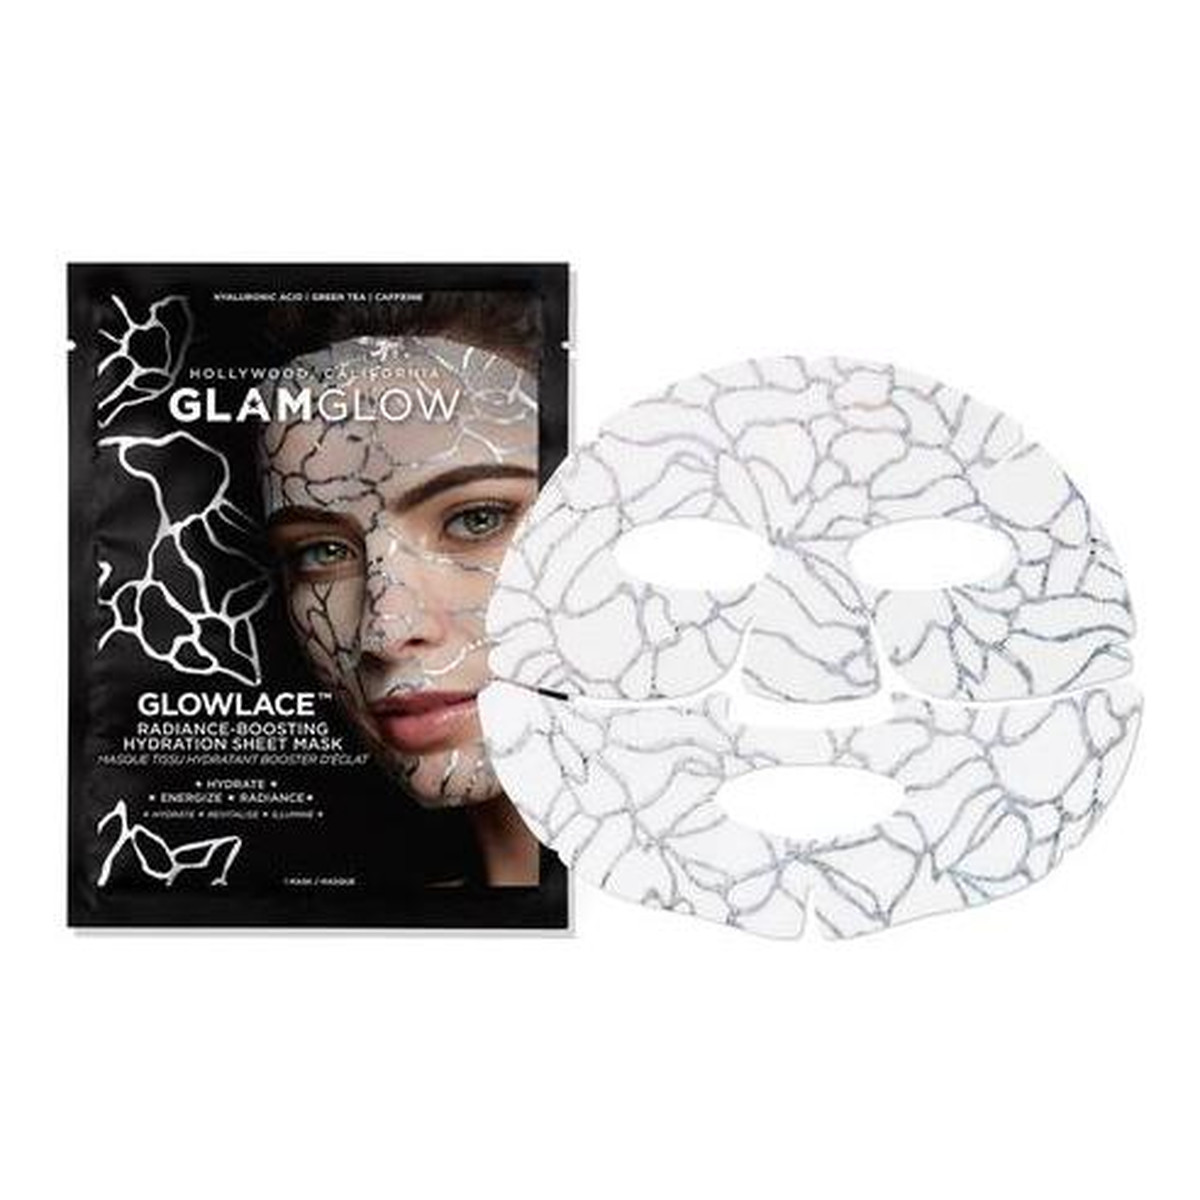 GlamGlow Sheet Mask Radiance Boosting Hydration nawilżajaca maska do twarzy w płachcie